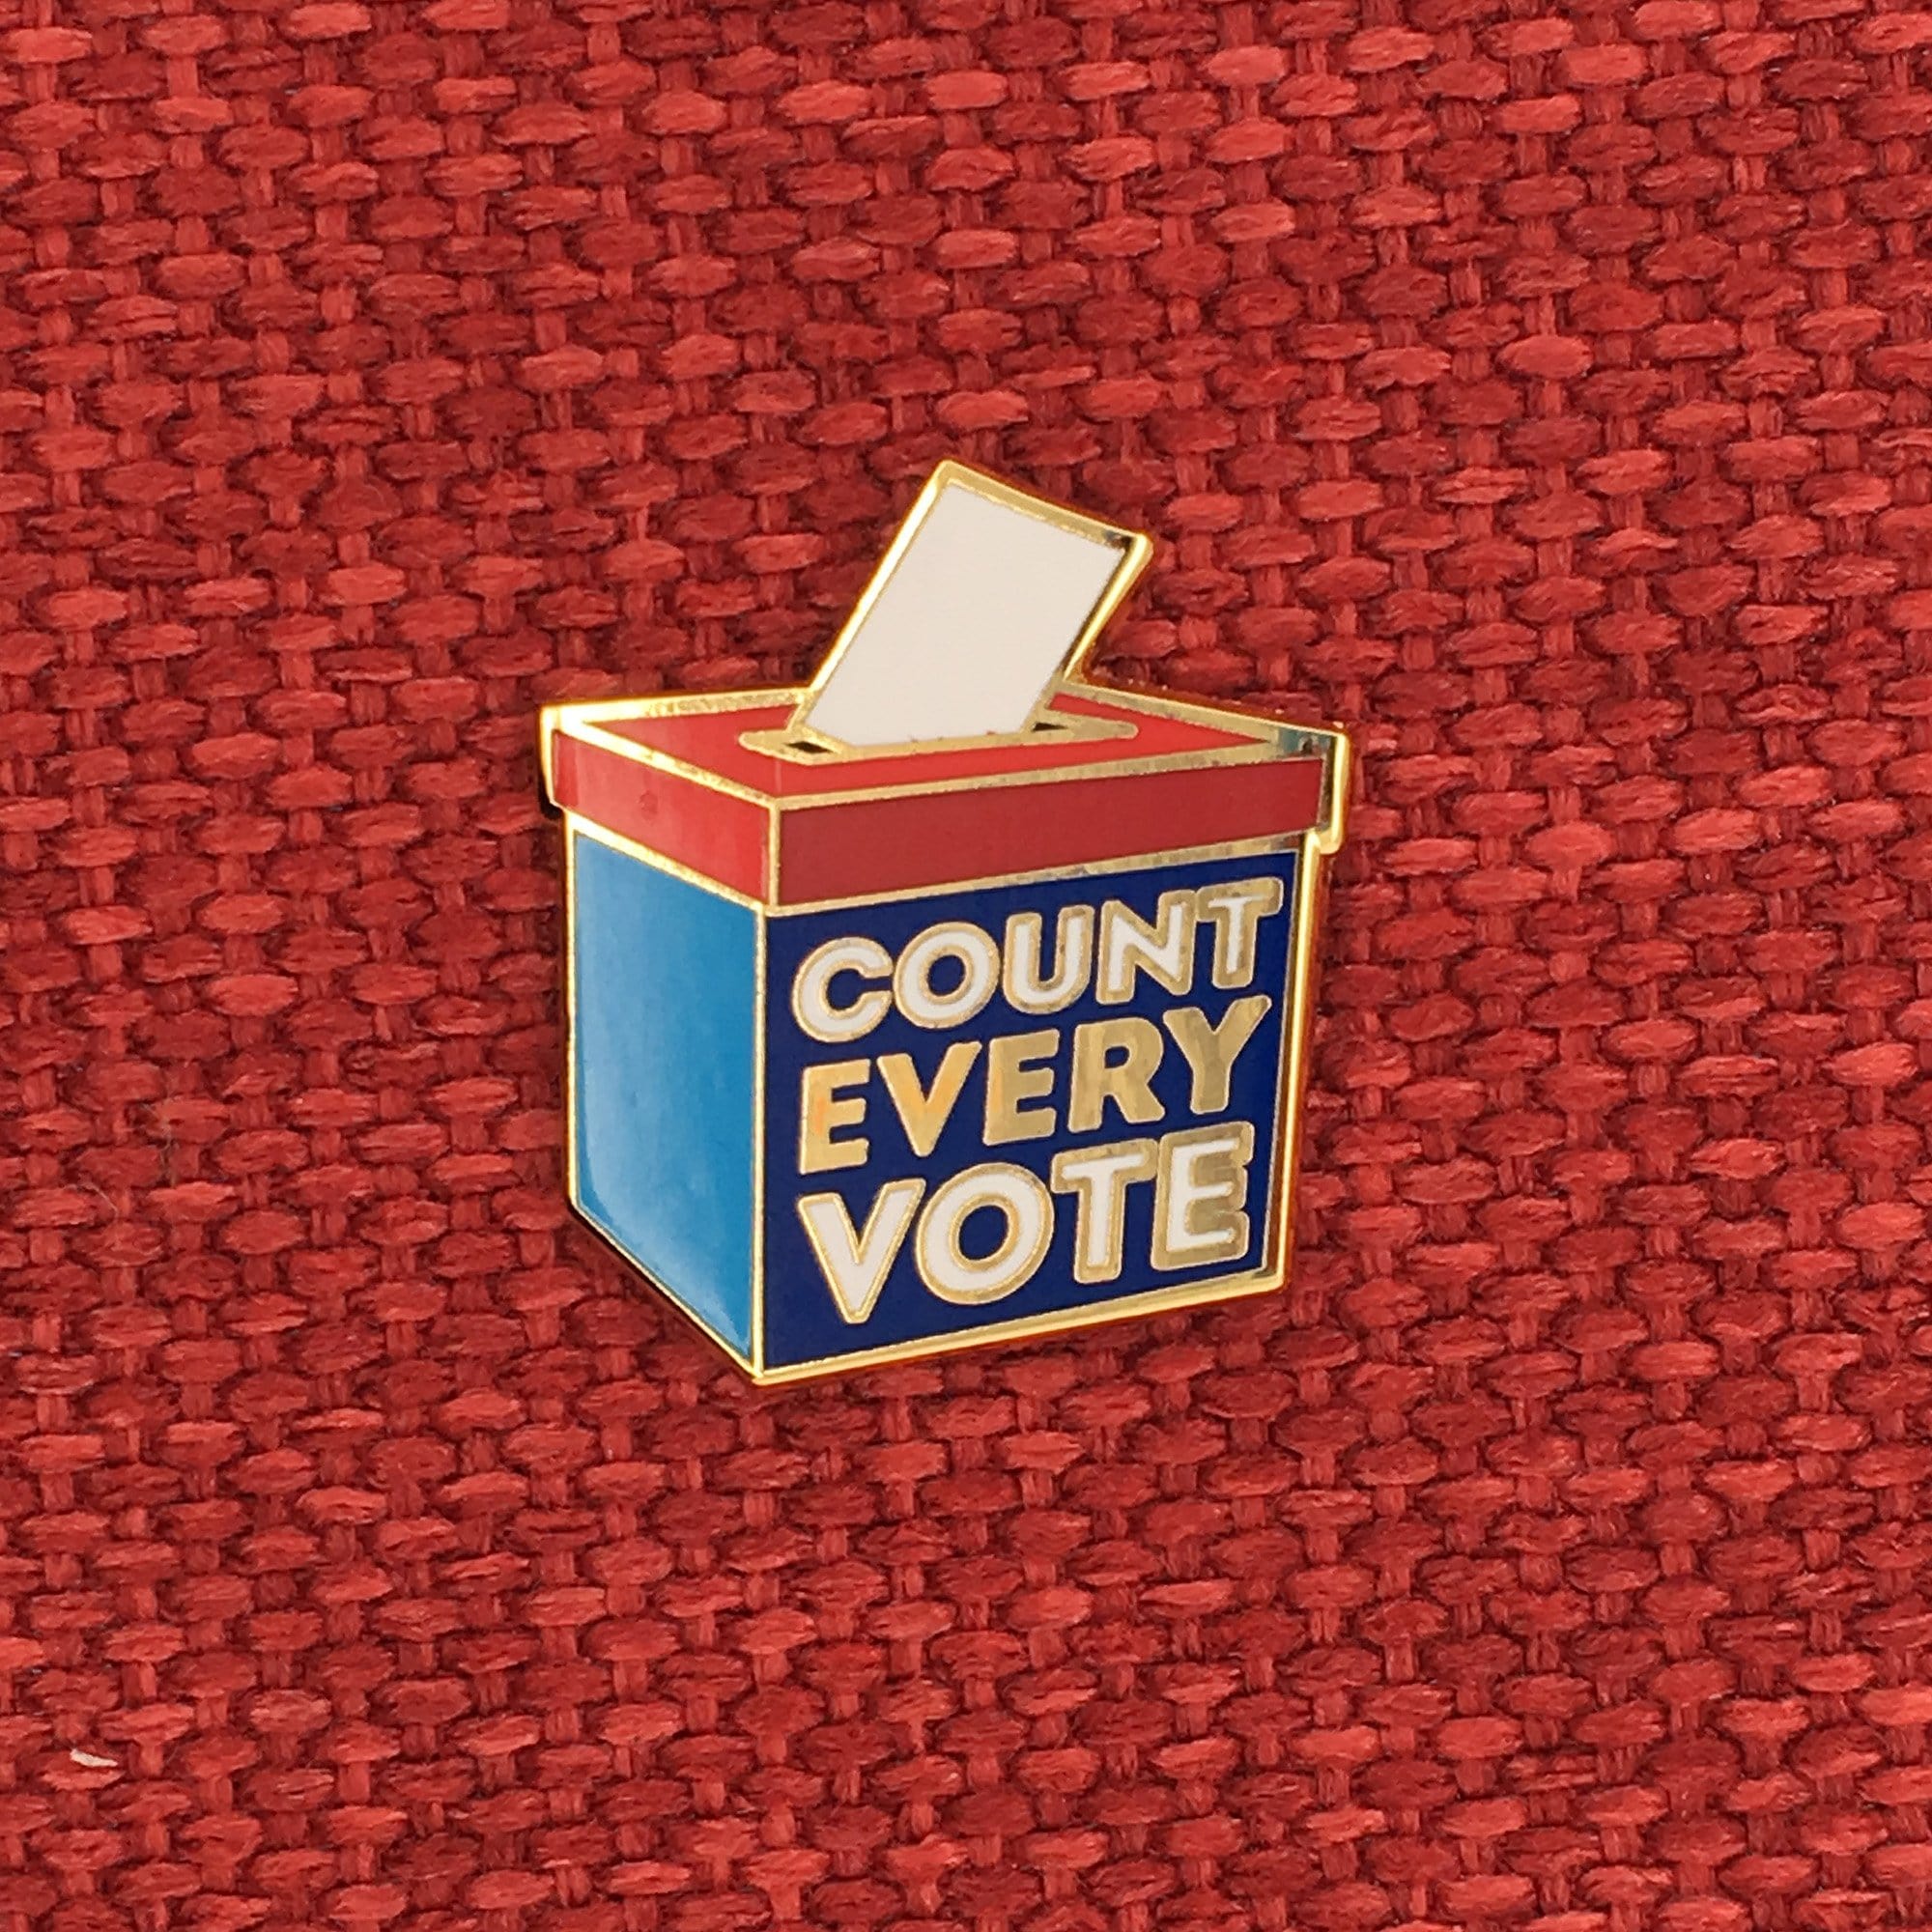 Count Every Vote Mini Pin